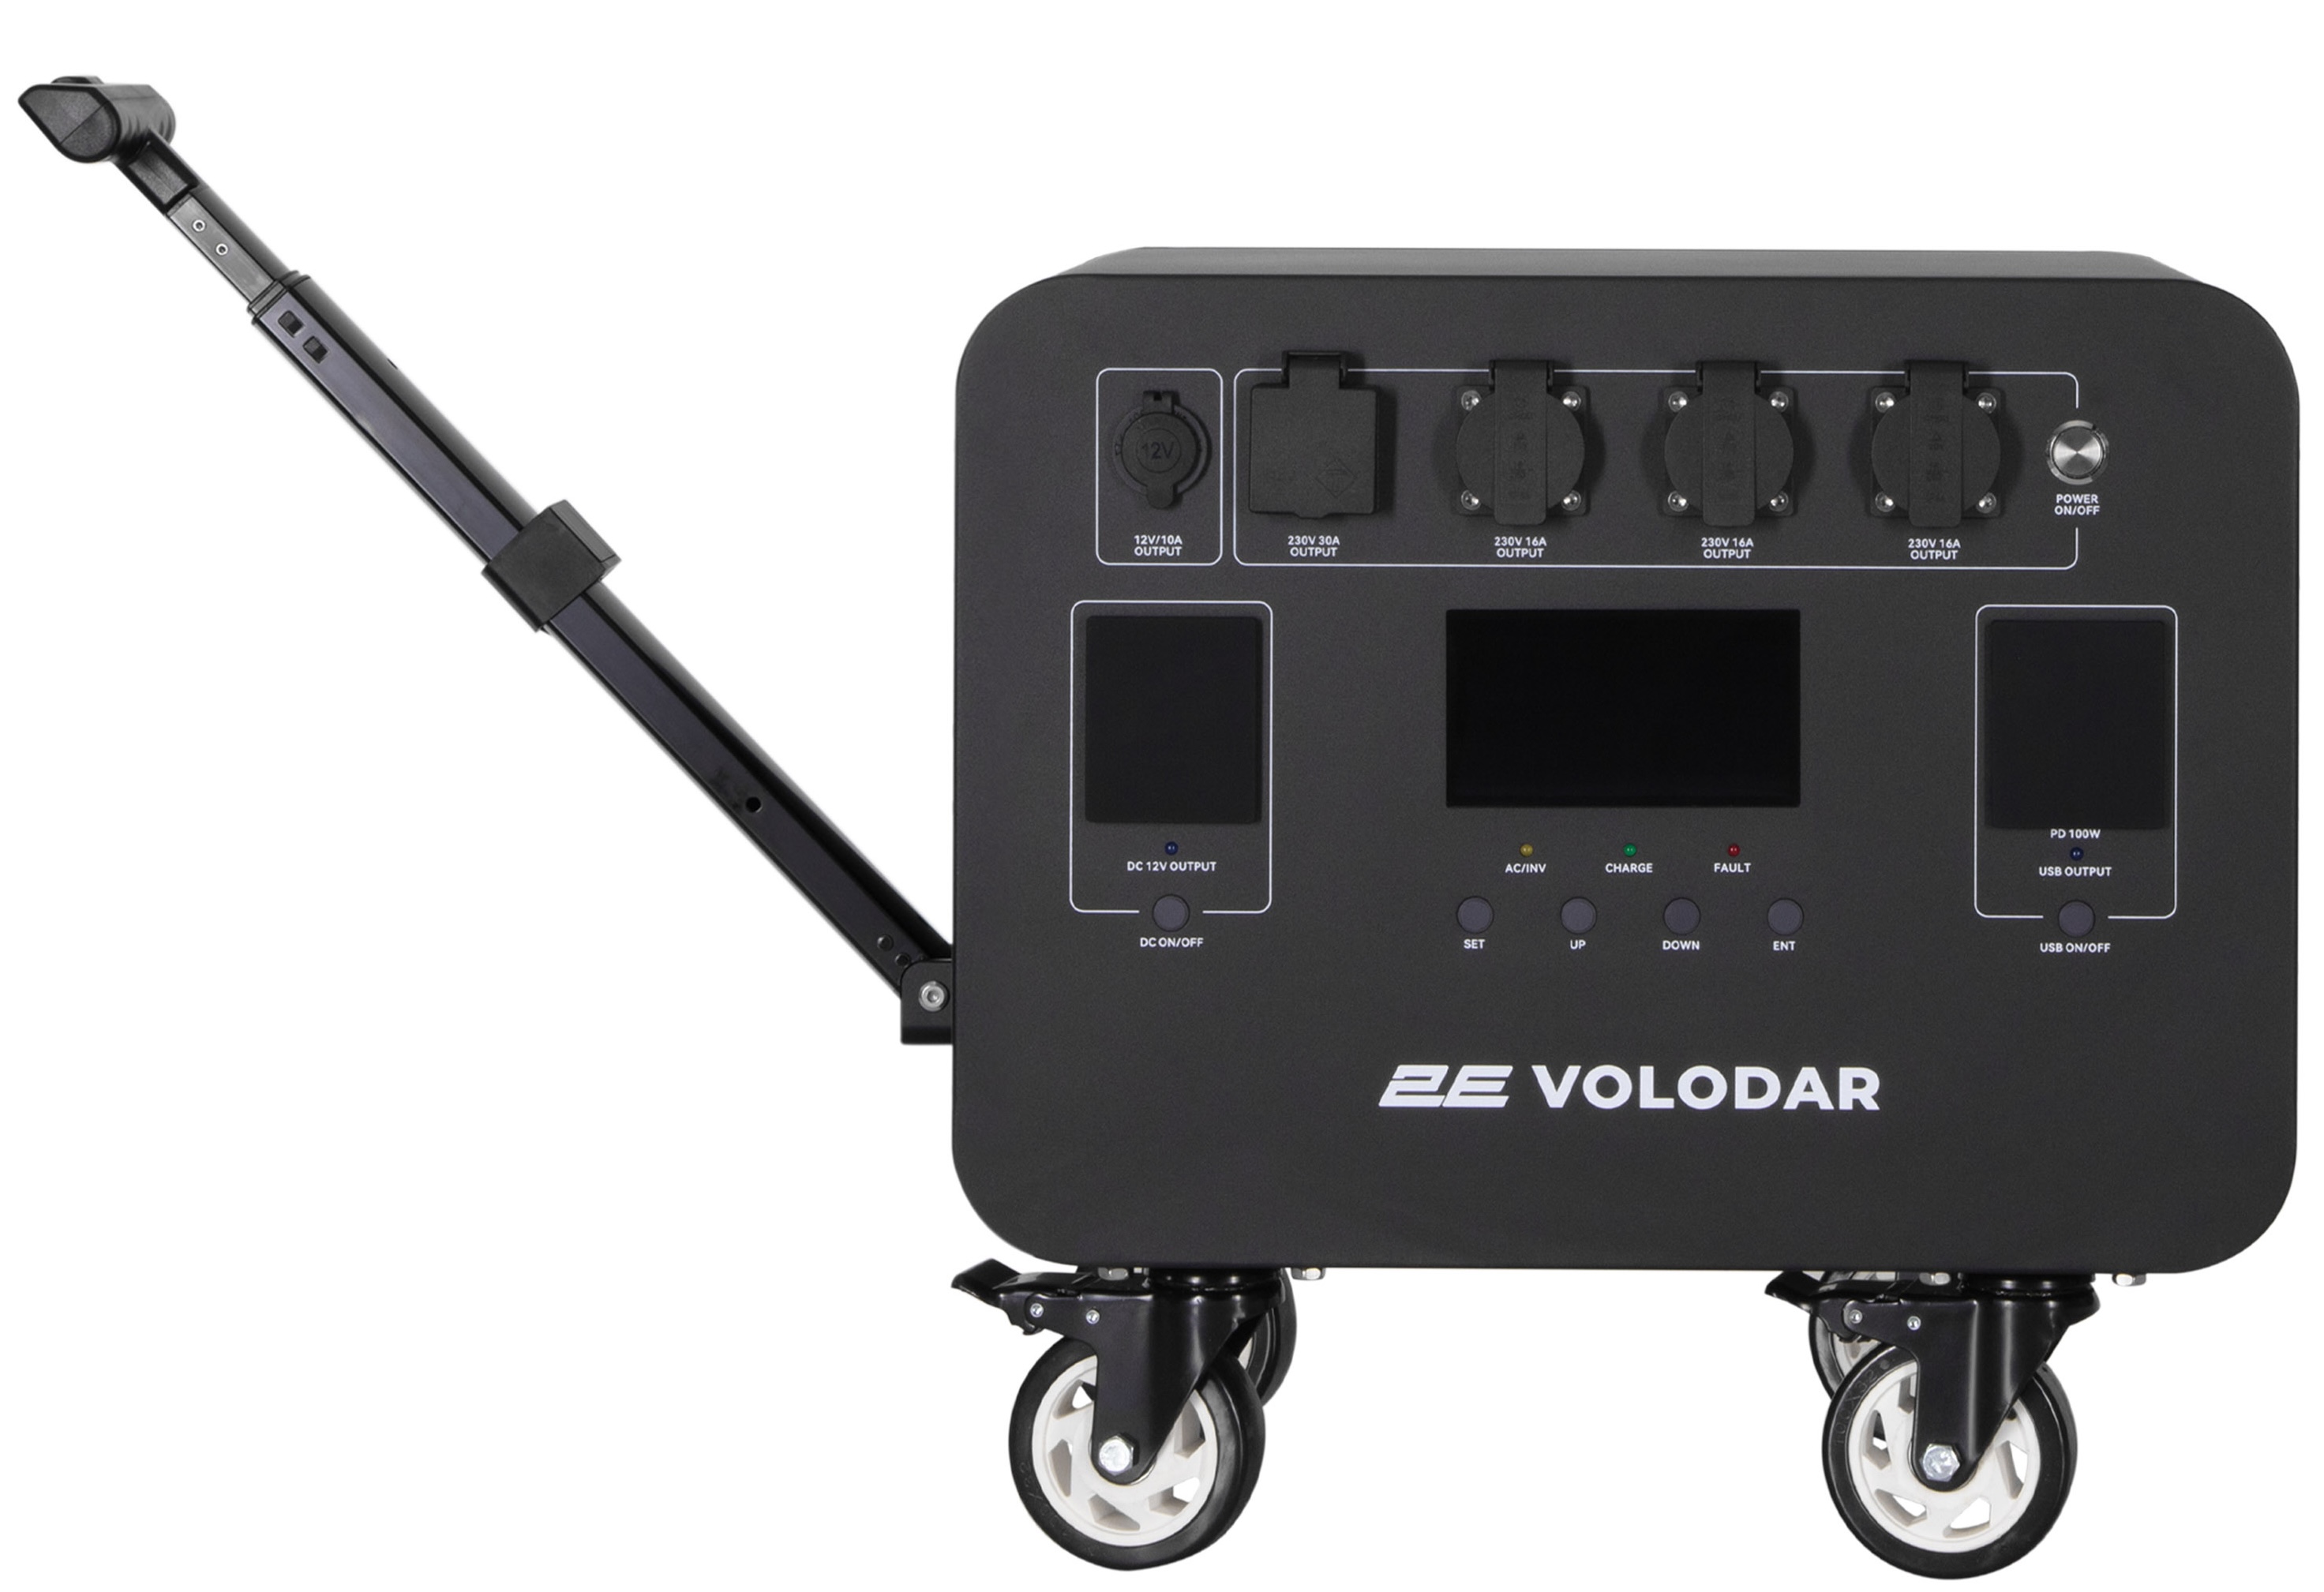 Портативная зарядная станция 2E Volodar 5000W, 5120Wh (2E-PPS5051) инструкция - изображение 6